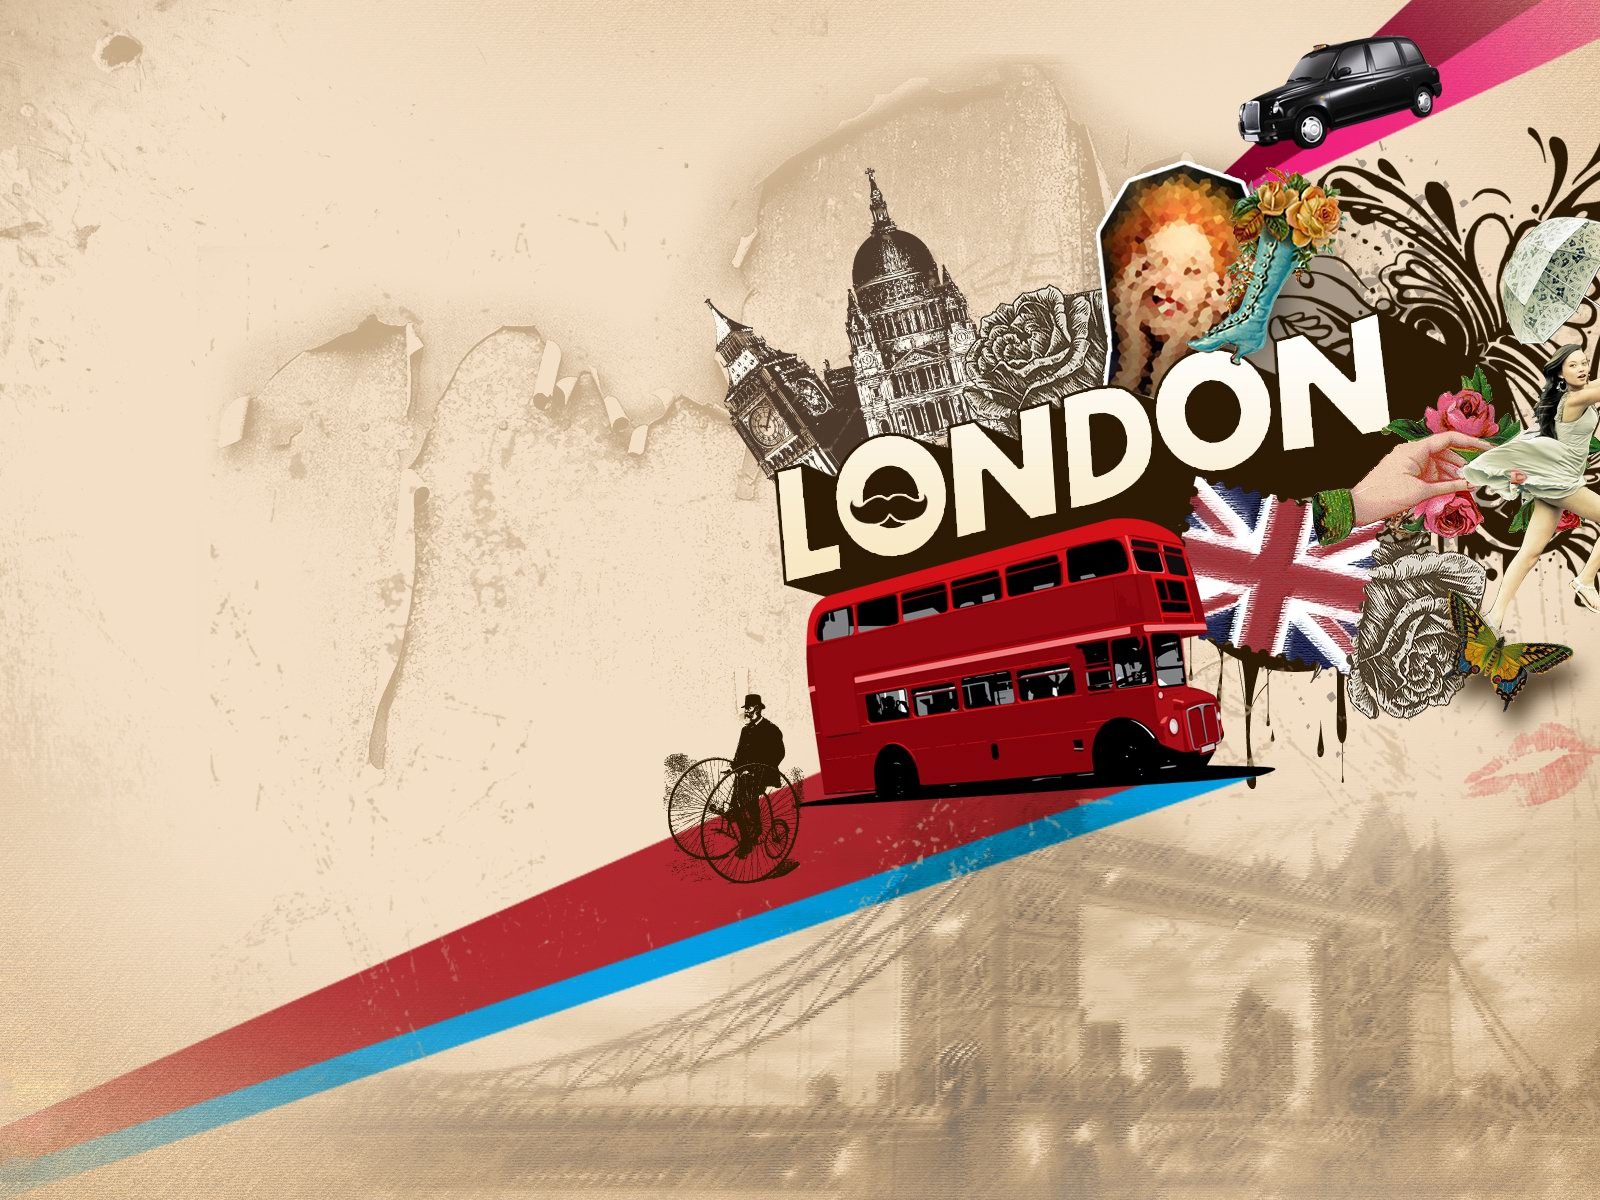 Londres 2012 Olimpiadas fondos temáticos (1) #15 - 1600x1200